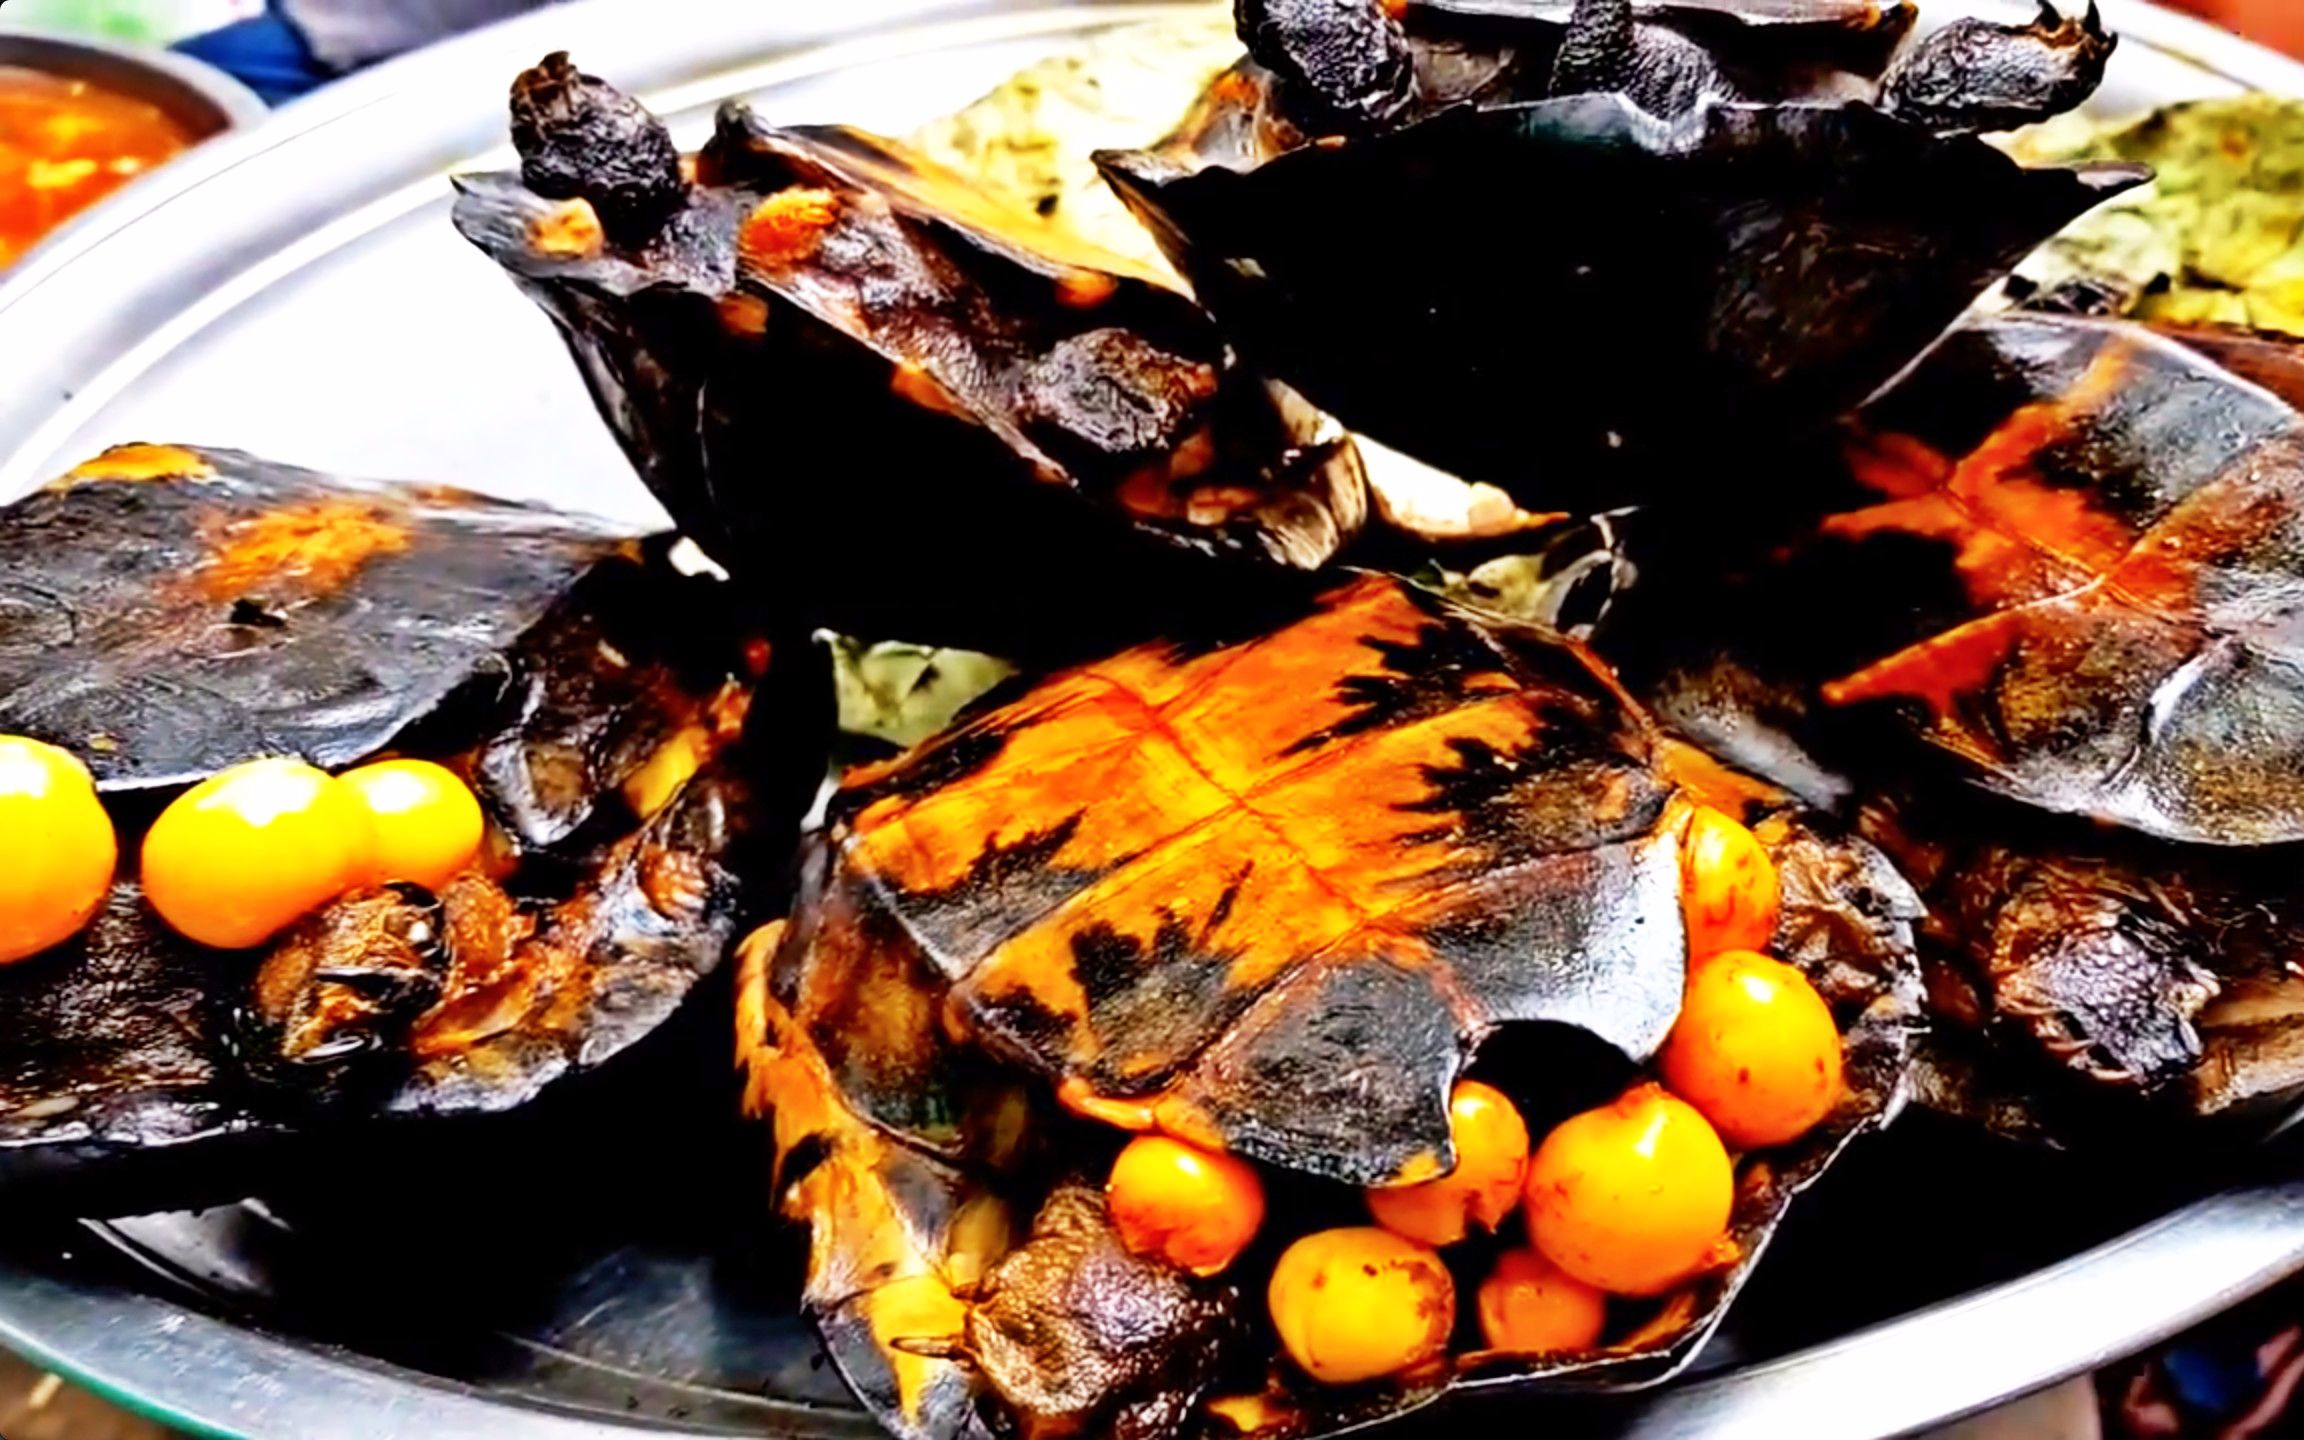 柬埔寨街头奇葩食物烤乌龟烤鱼整个蜂巢麻辣螃蟹炸鸡